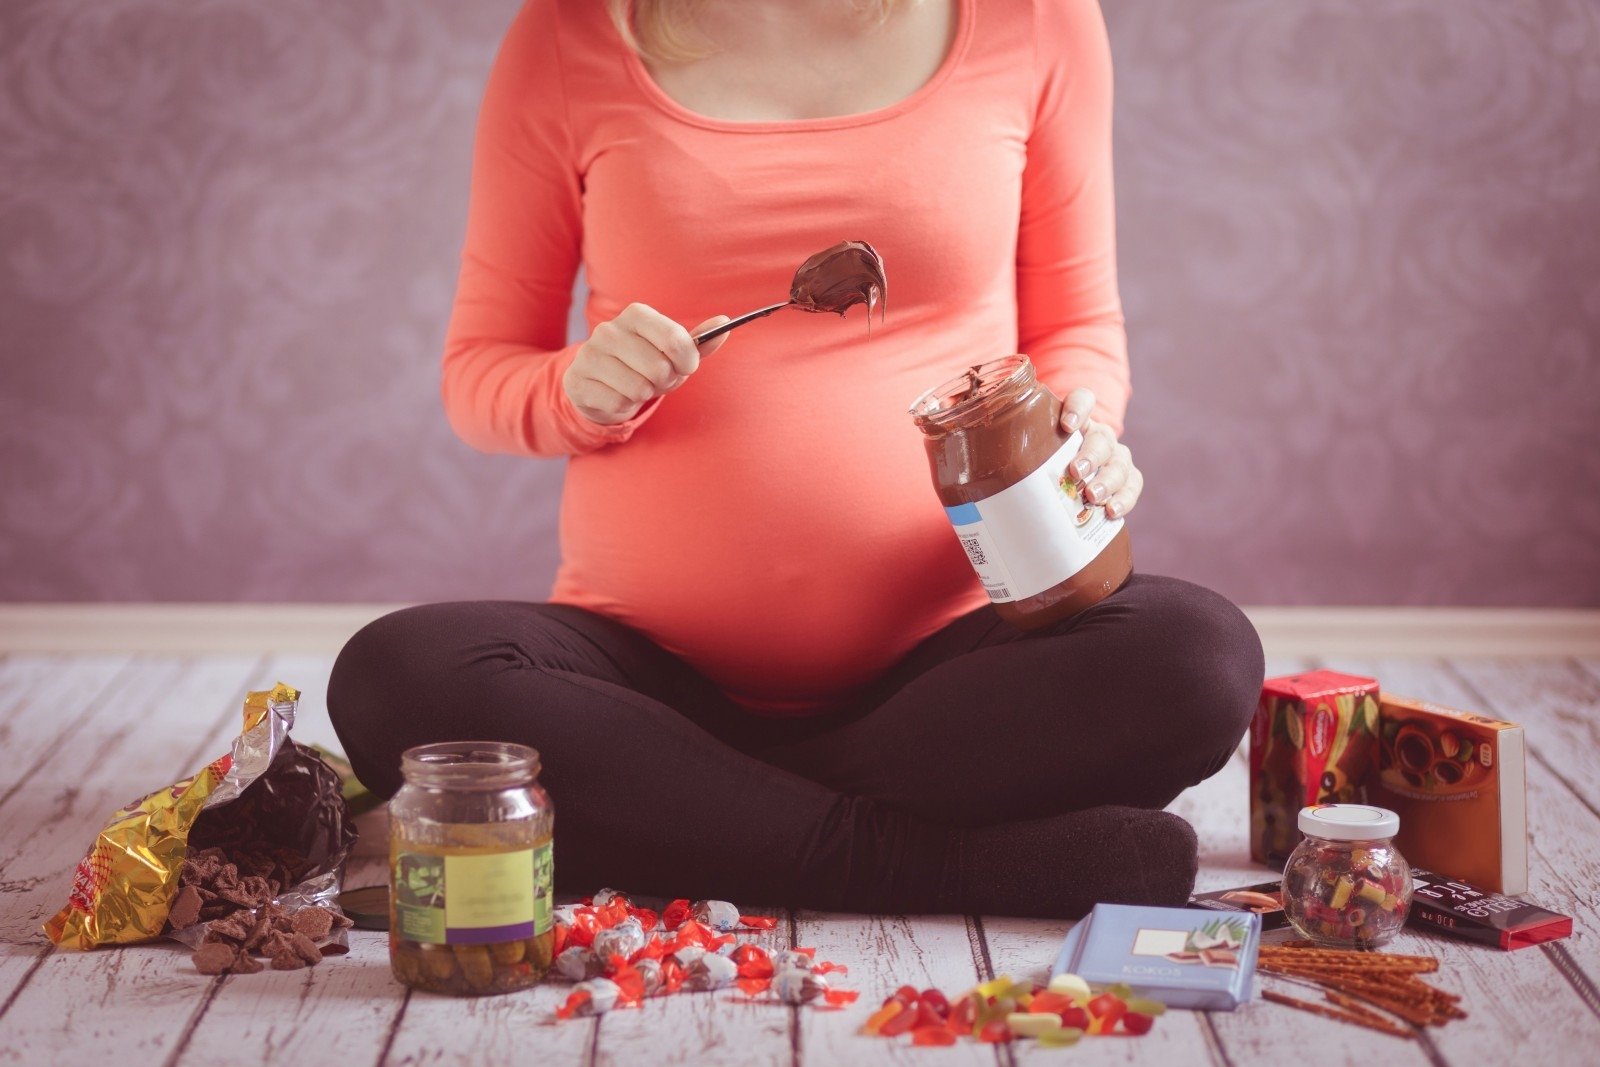 svorio netekimas 8 mėn nėščia lieknėjimo raktinis žodis